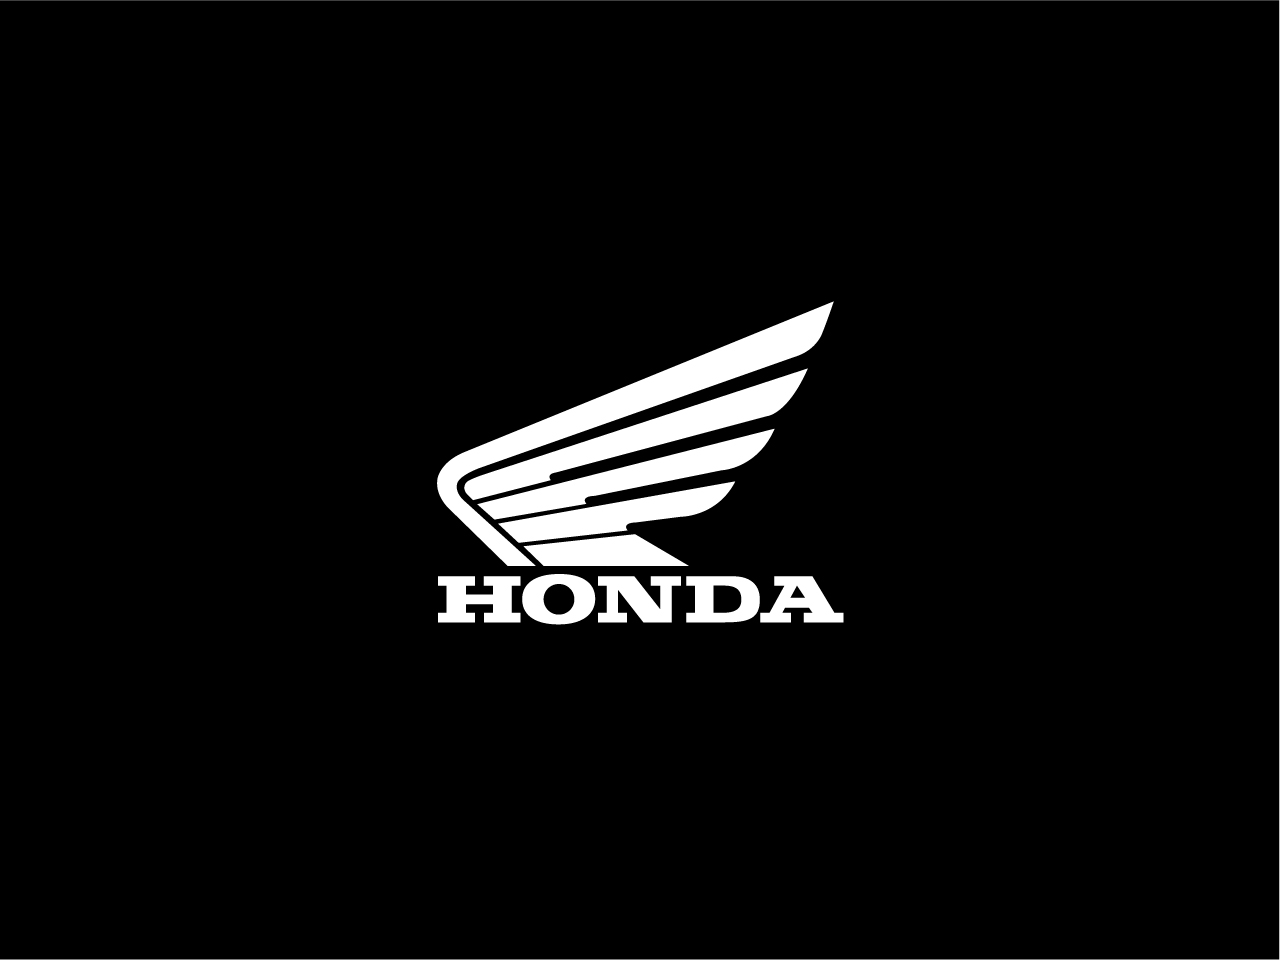 Honda Racing Wallpapers